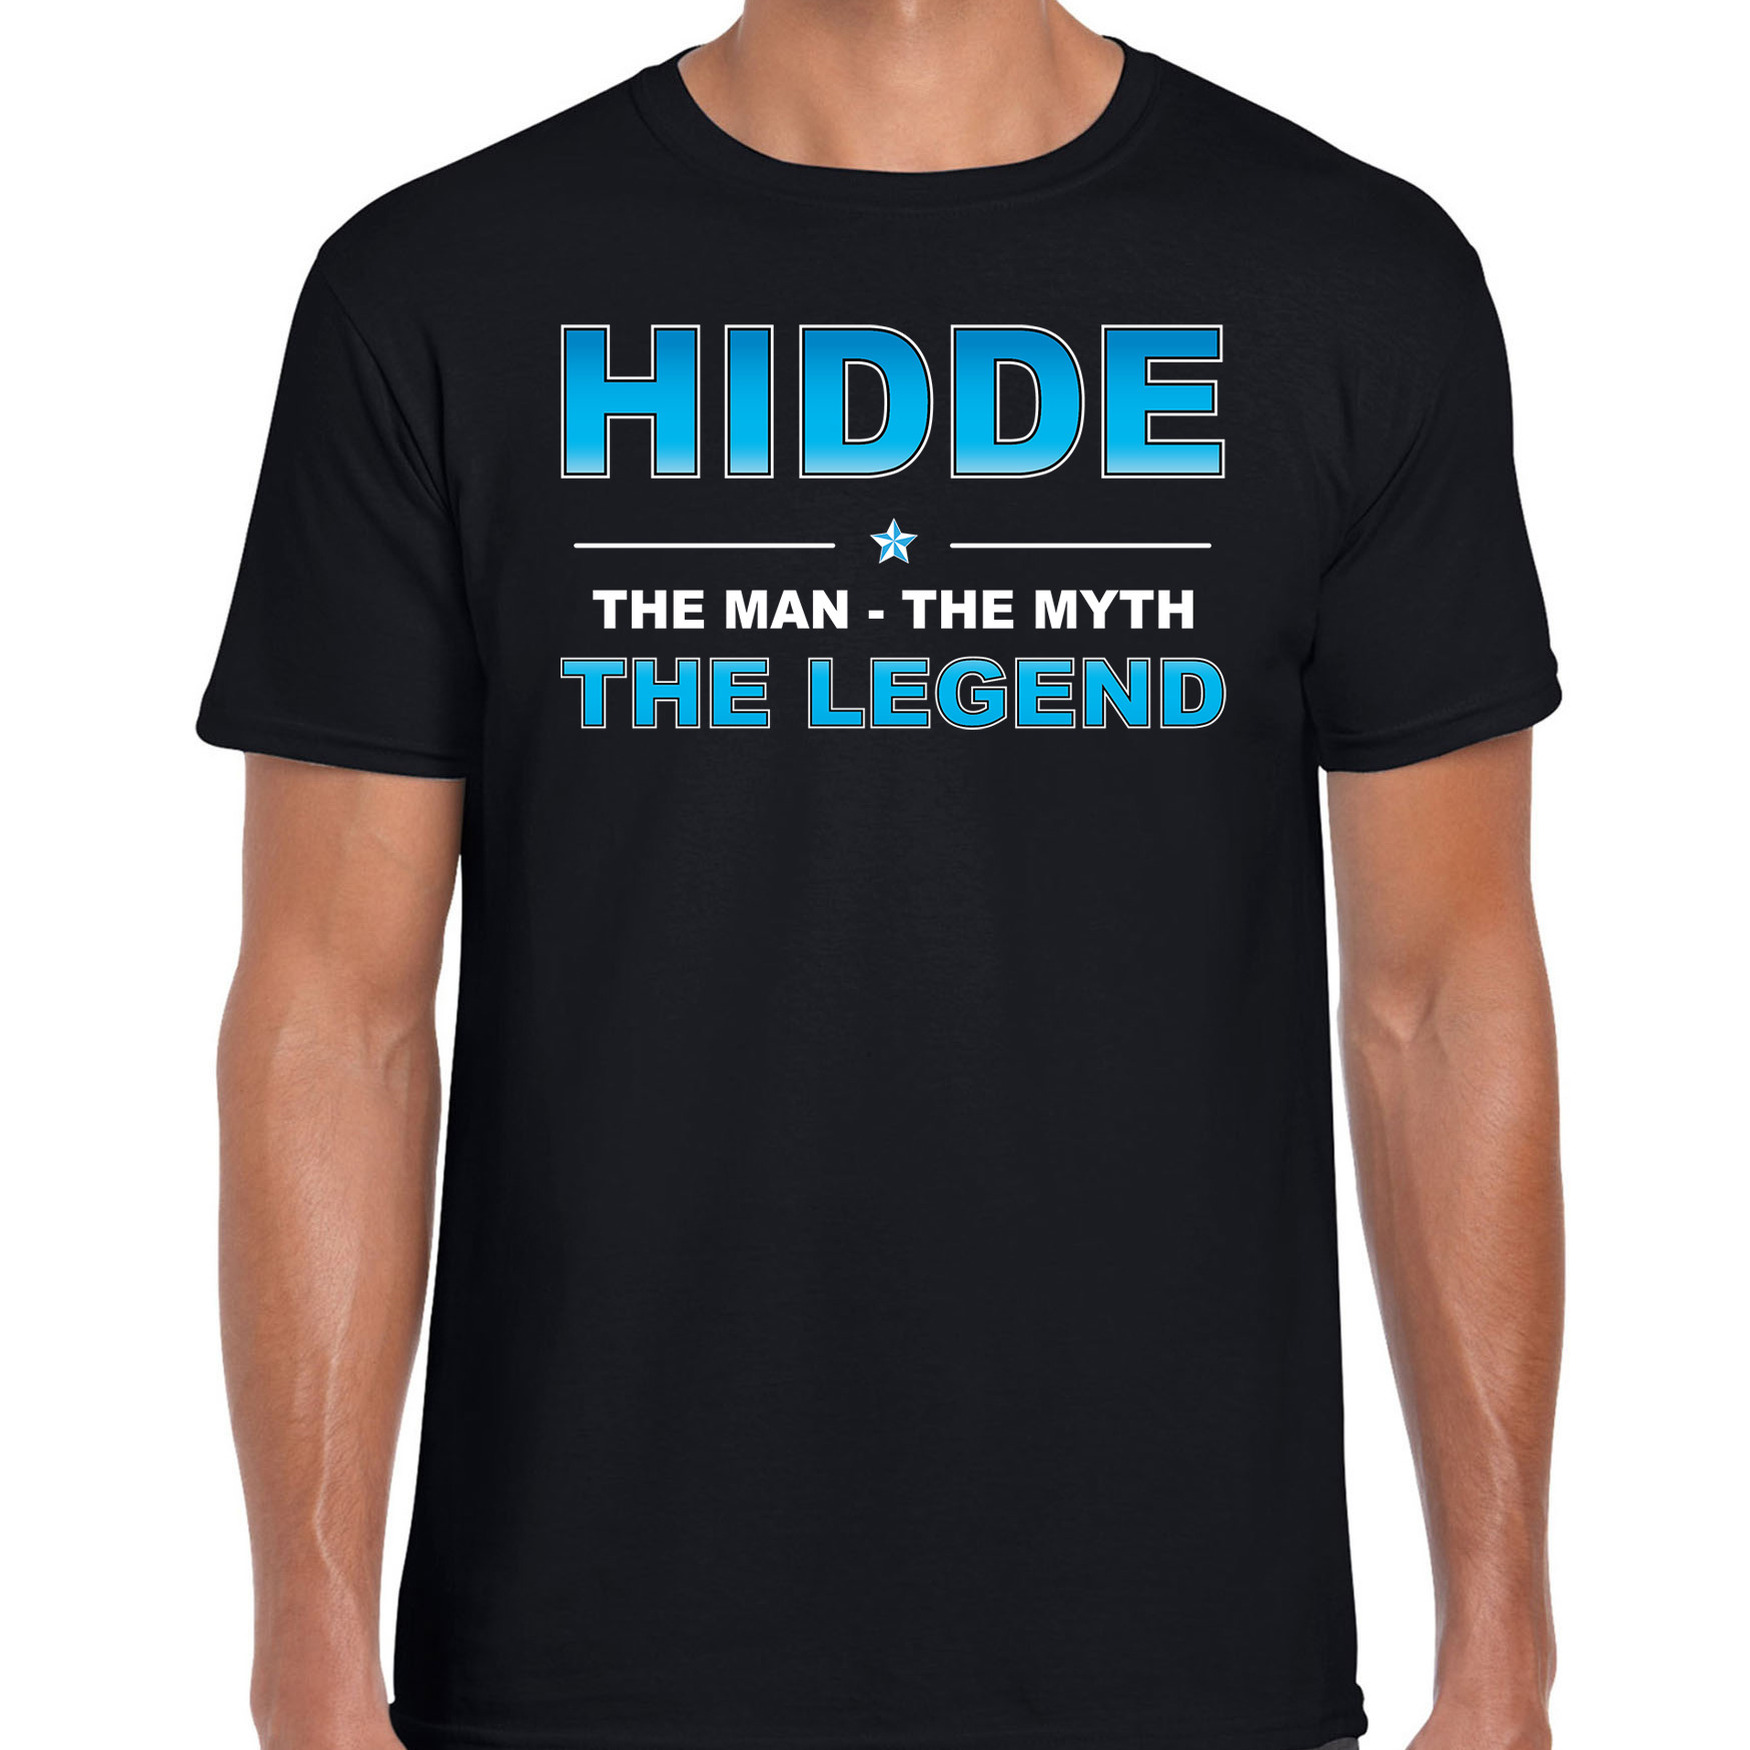 Naam cadeau t-shirt Hidde - the legend zwart voor heren